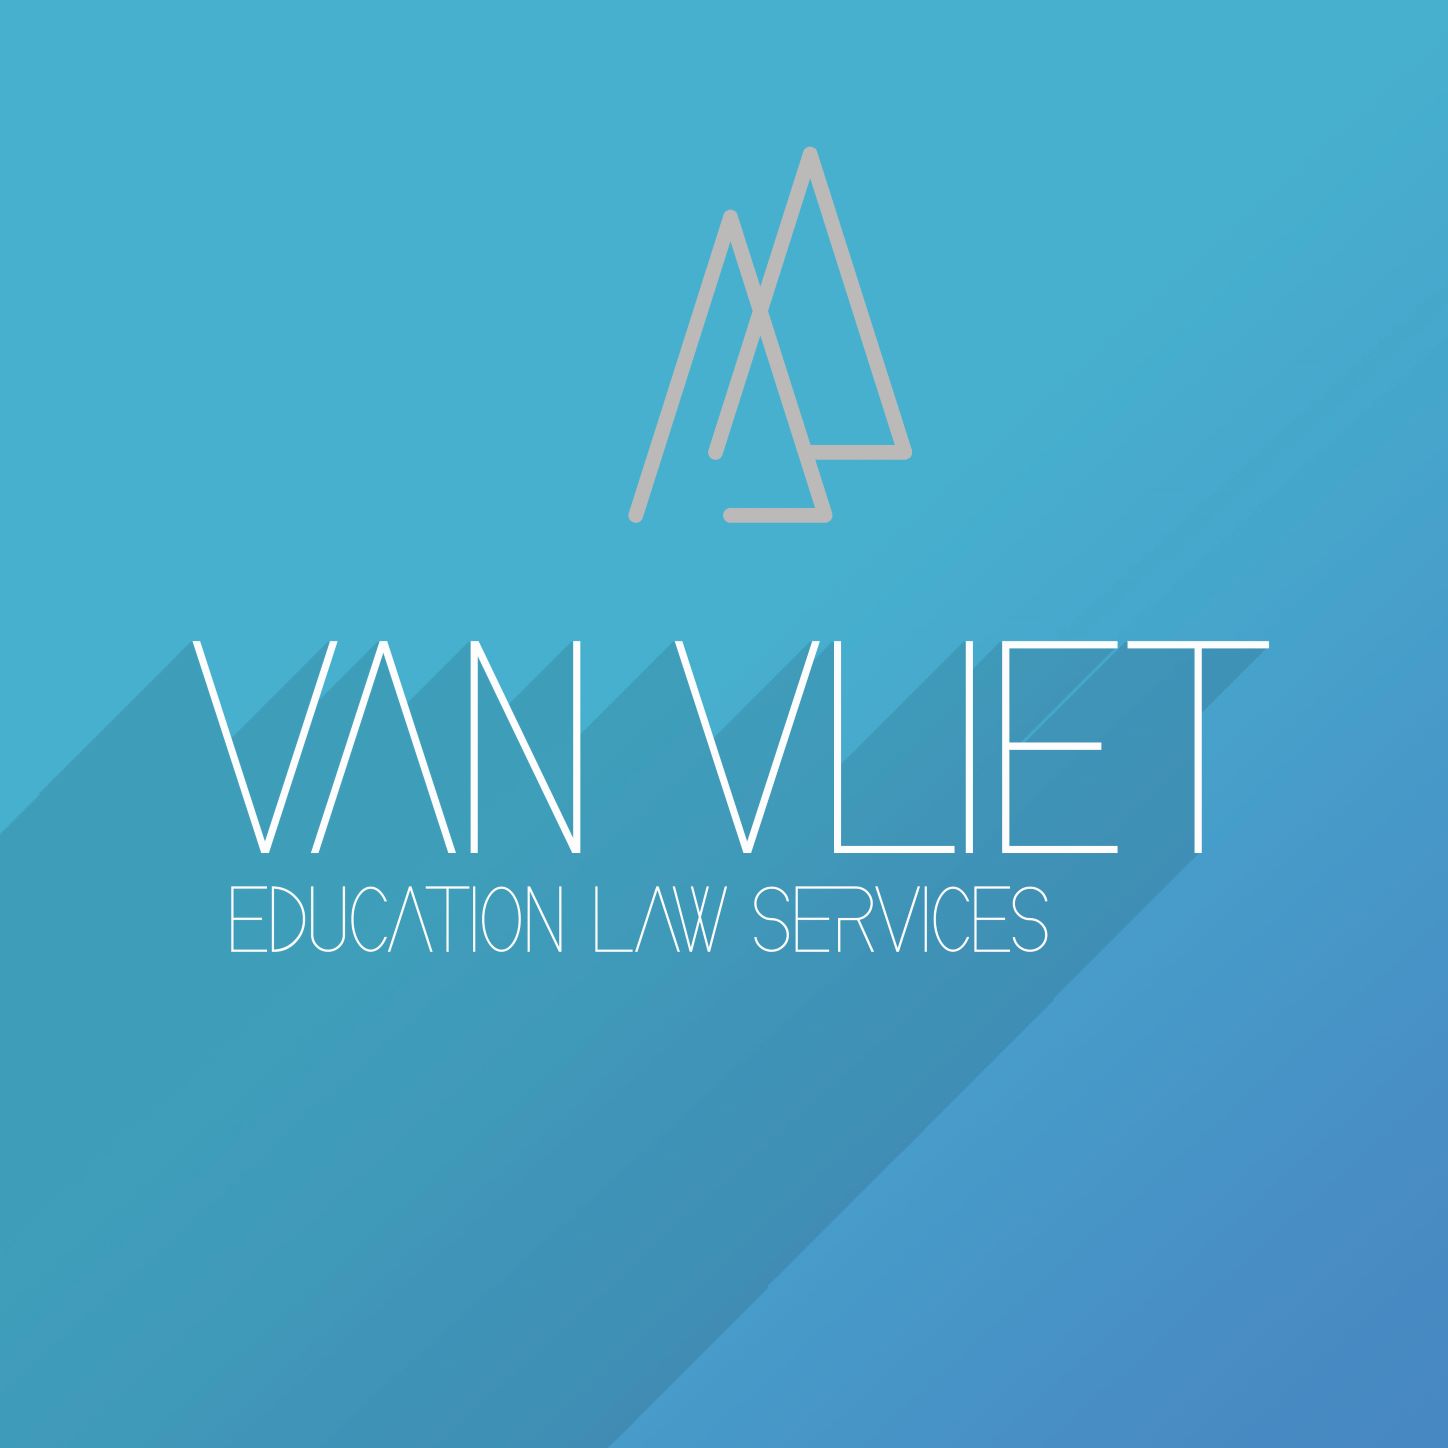 Rechtsbijstand voor studenten | Van Vliet ELS Education Law Services